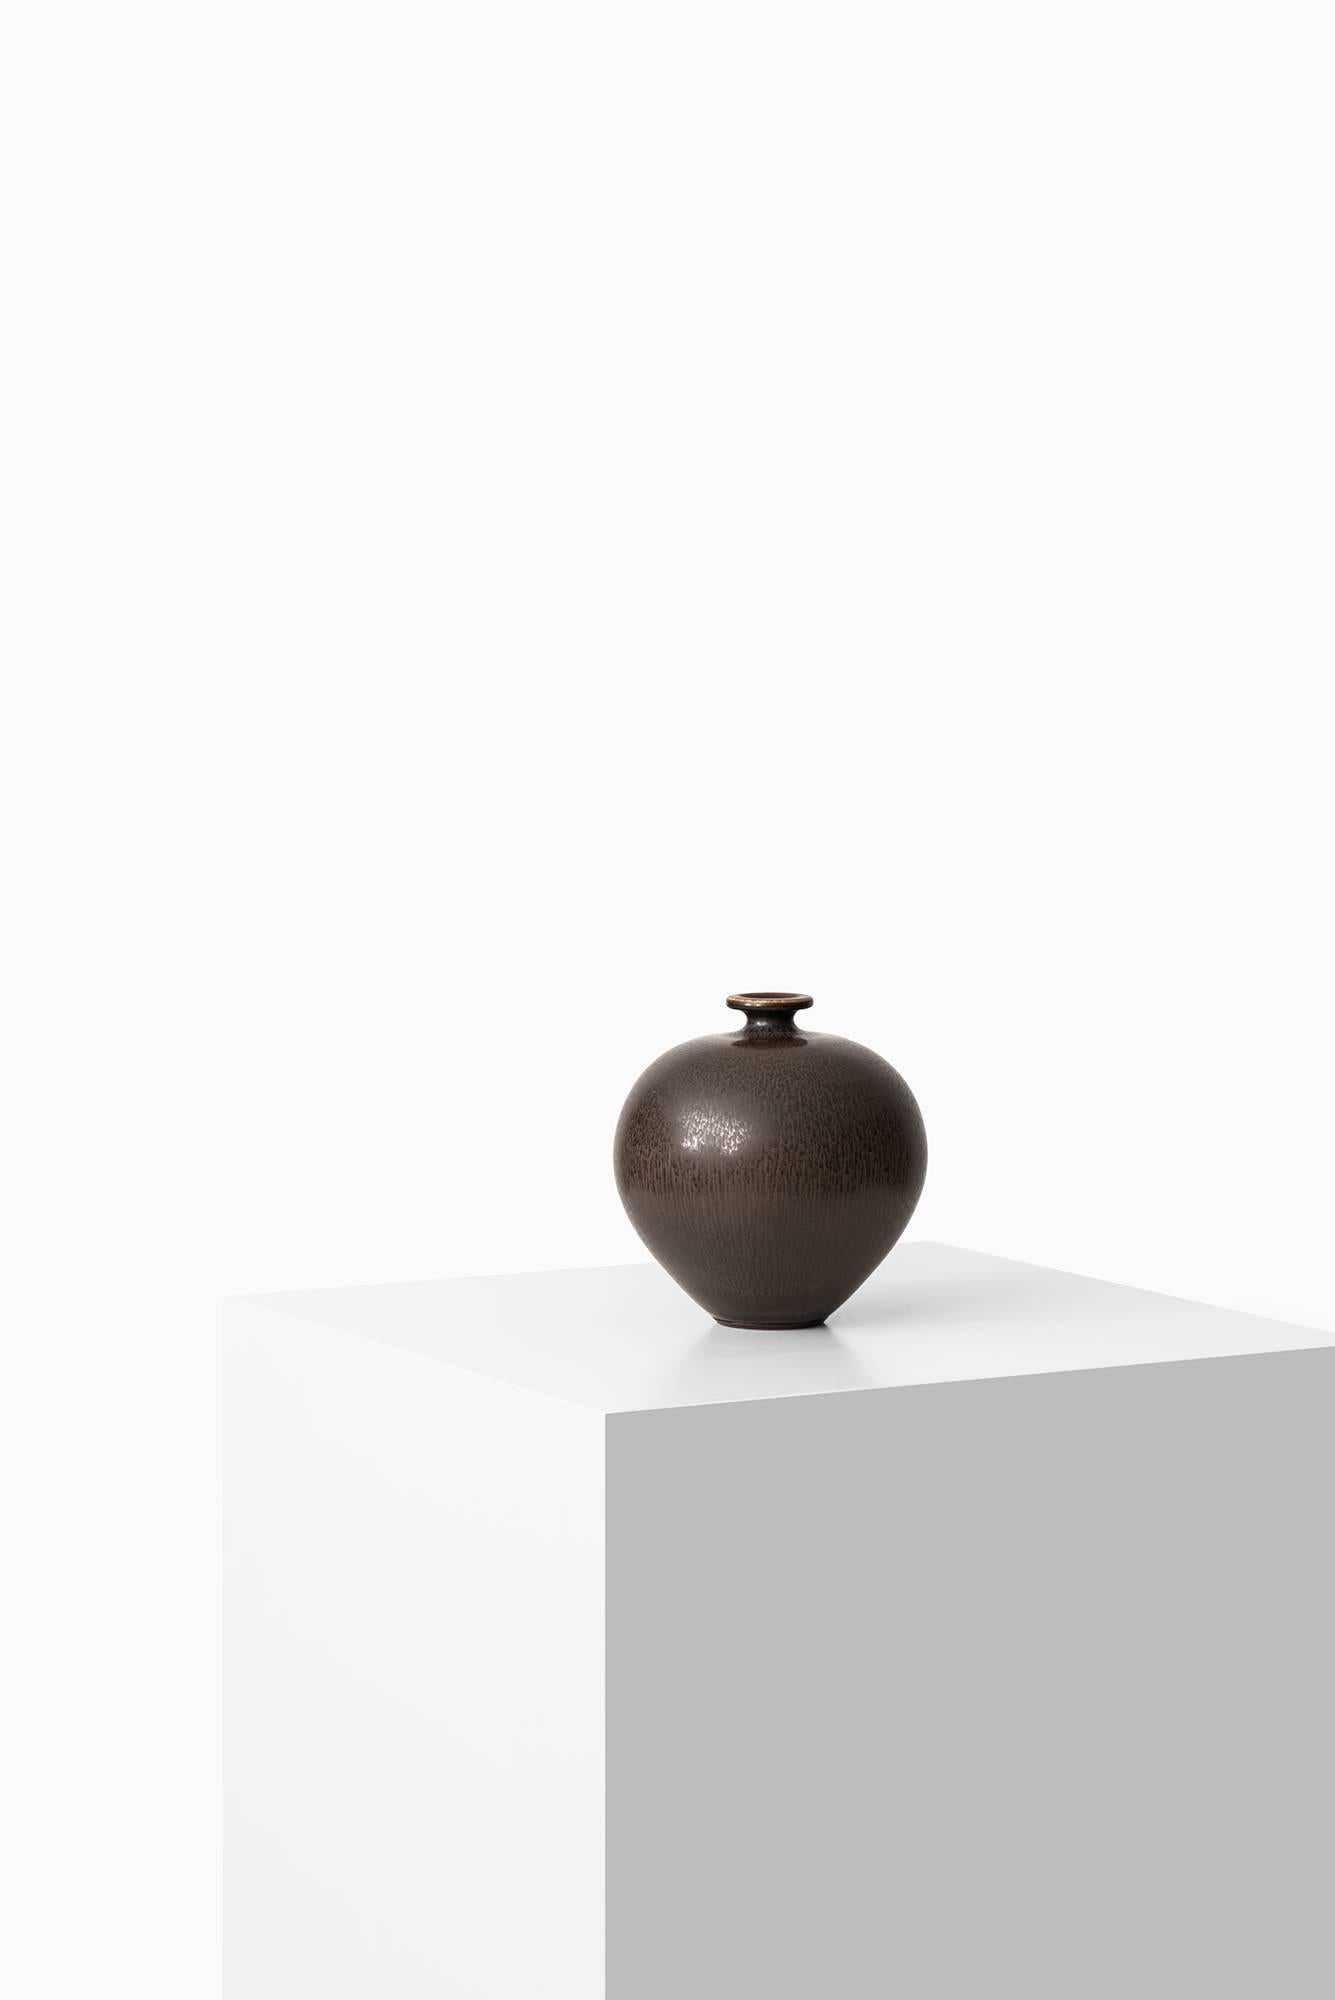 Rare ceramic vase designed by Berndt Friberg. Produced by Gustavsberg in Sweden.